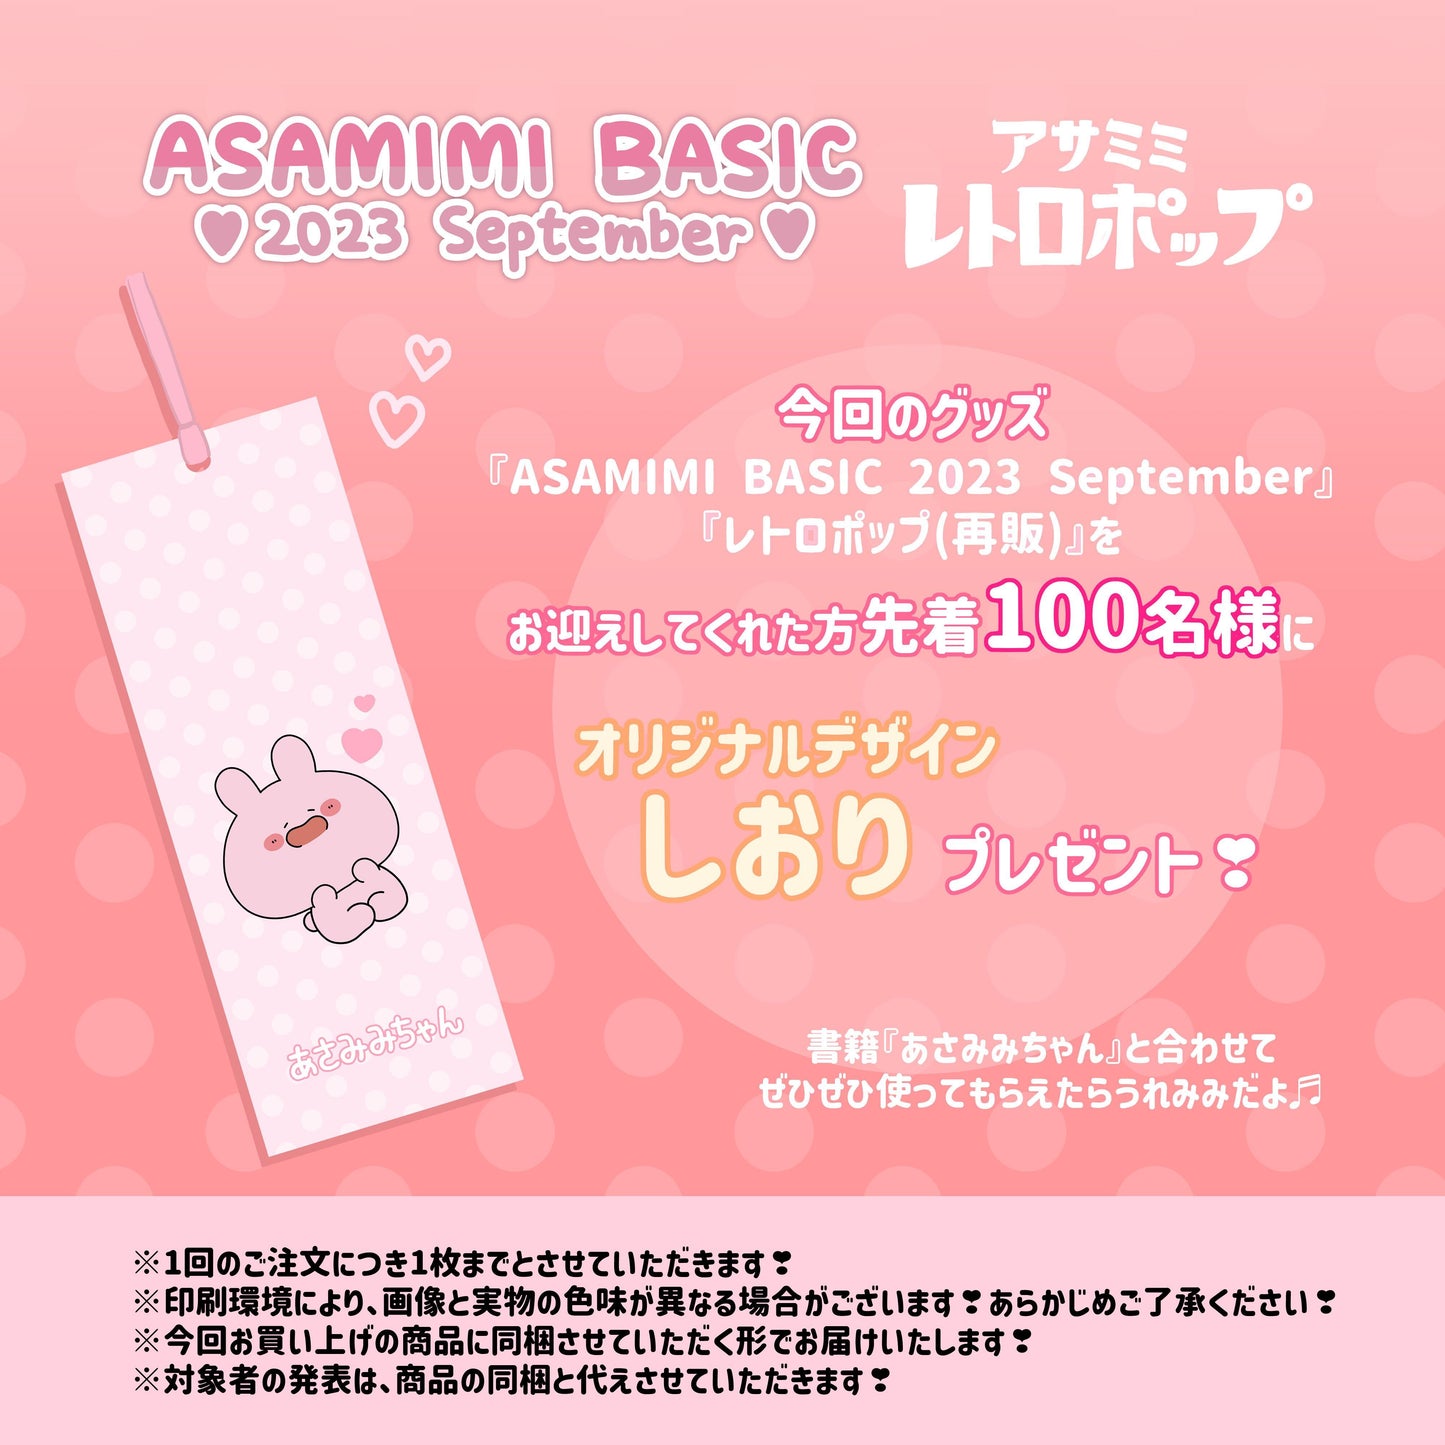 [Asamimi-chan] Hand towel (retro) [shipped in mid-November]